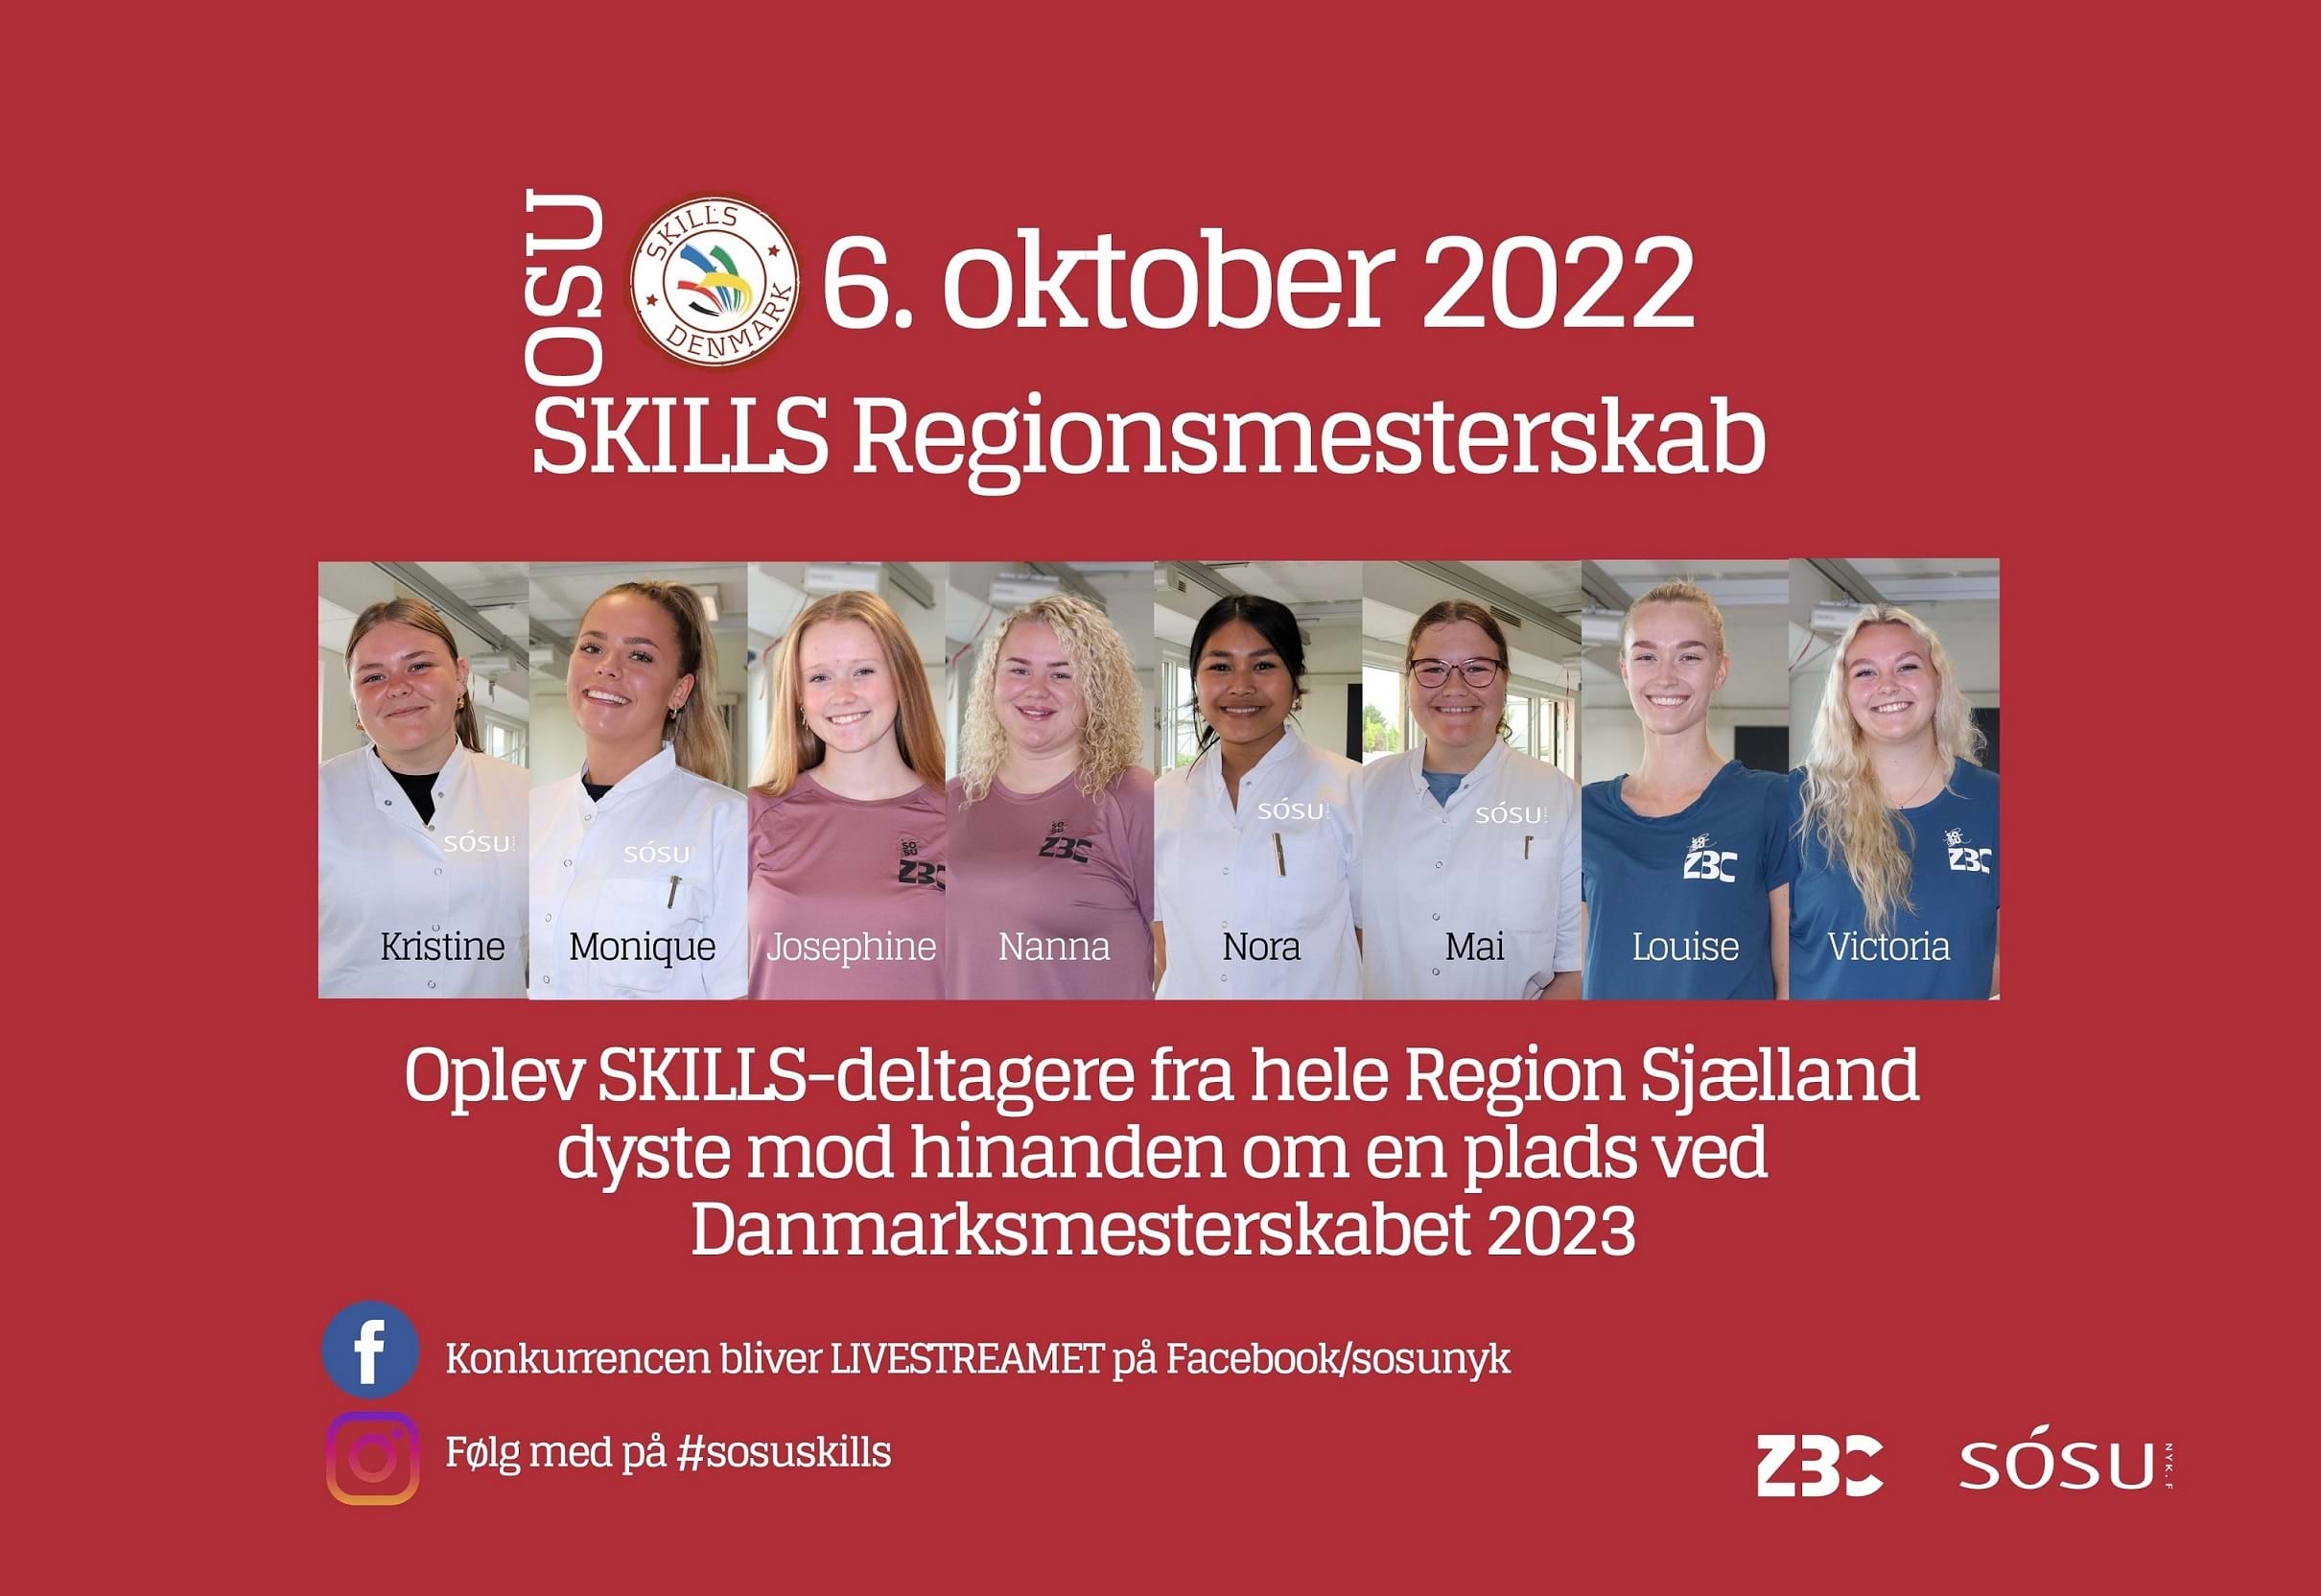 SKILLS-deltagerne fra Region Sjælland.